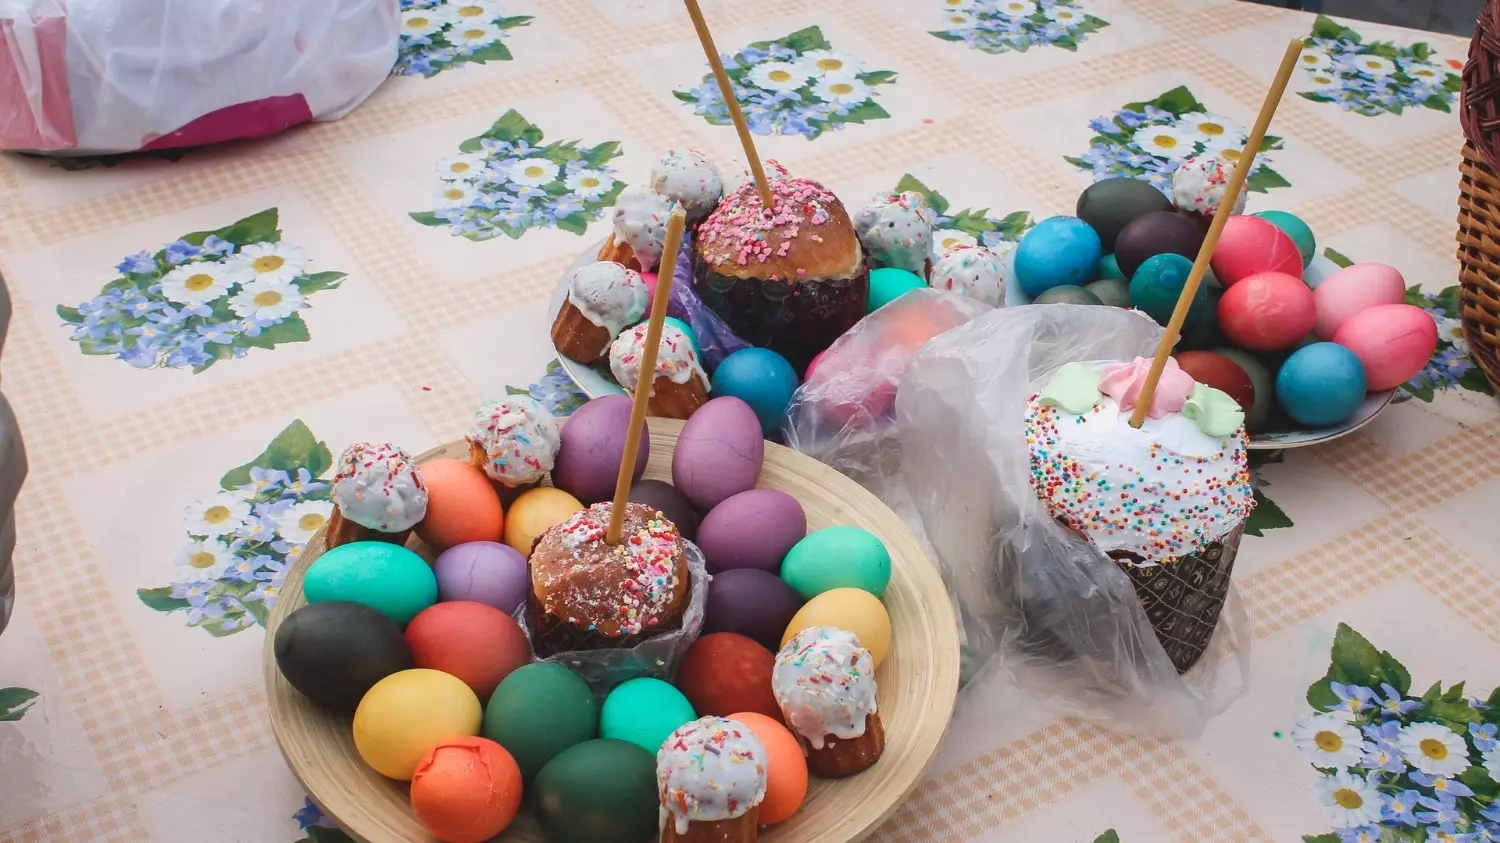 Приготовленные на Пасху куличи и крашенные яйца весь праздник стоят в центре стола.